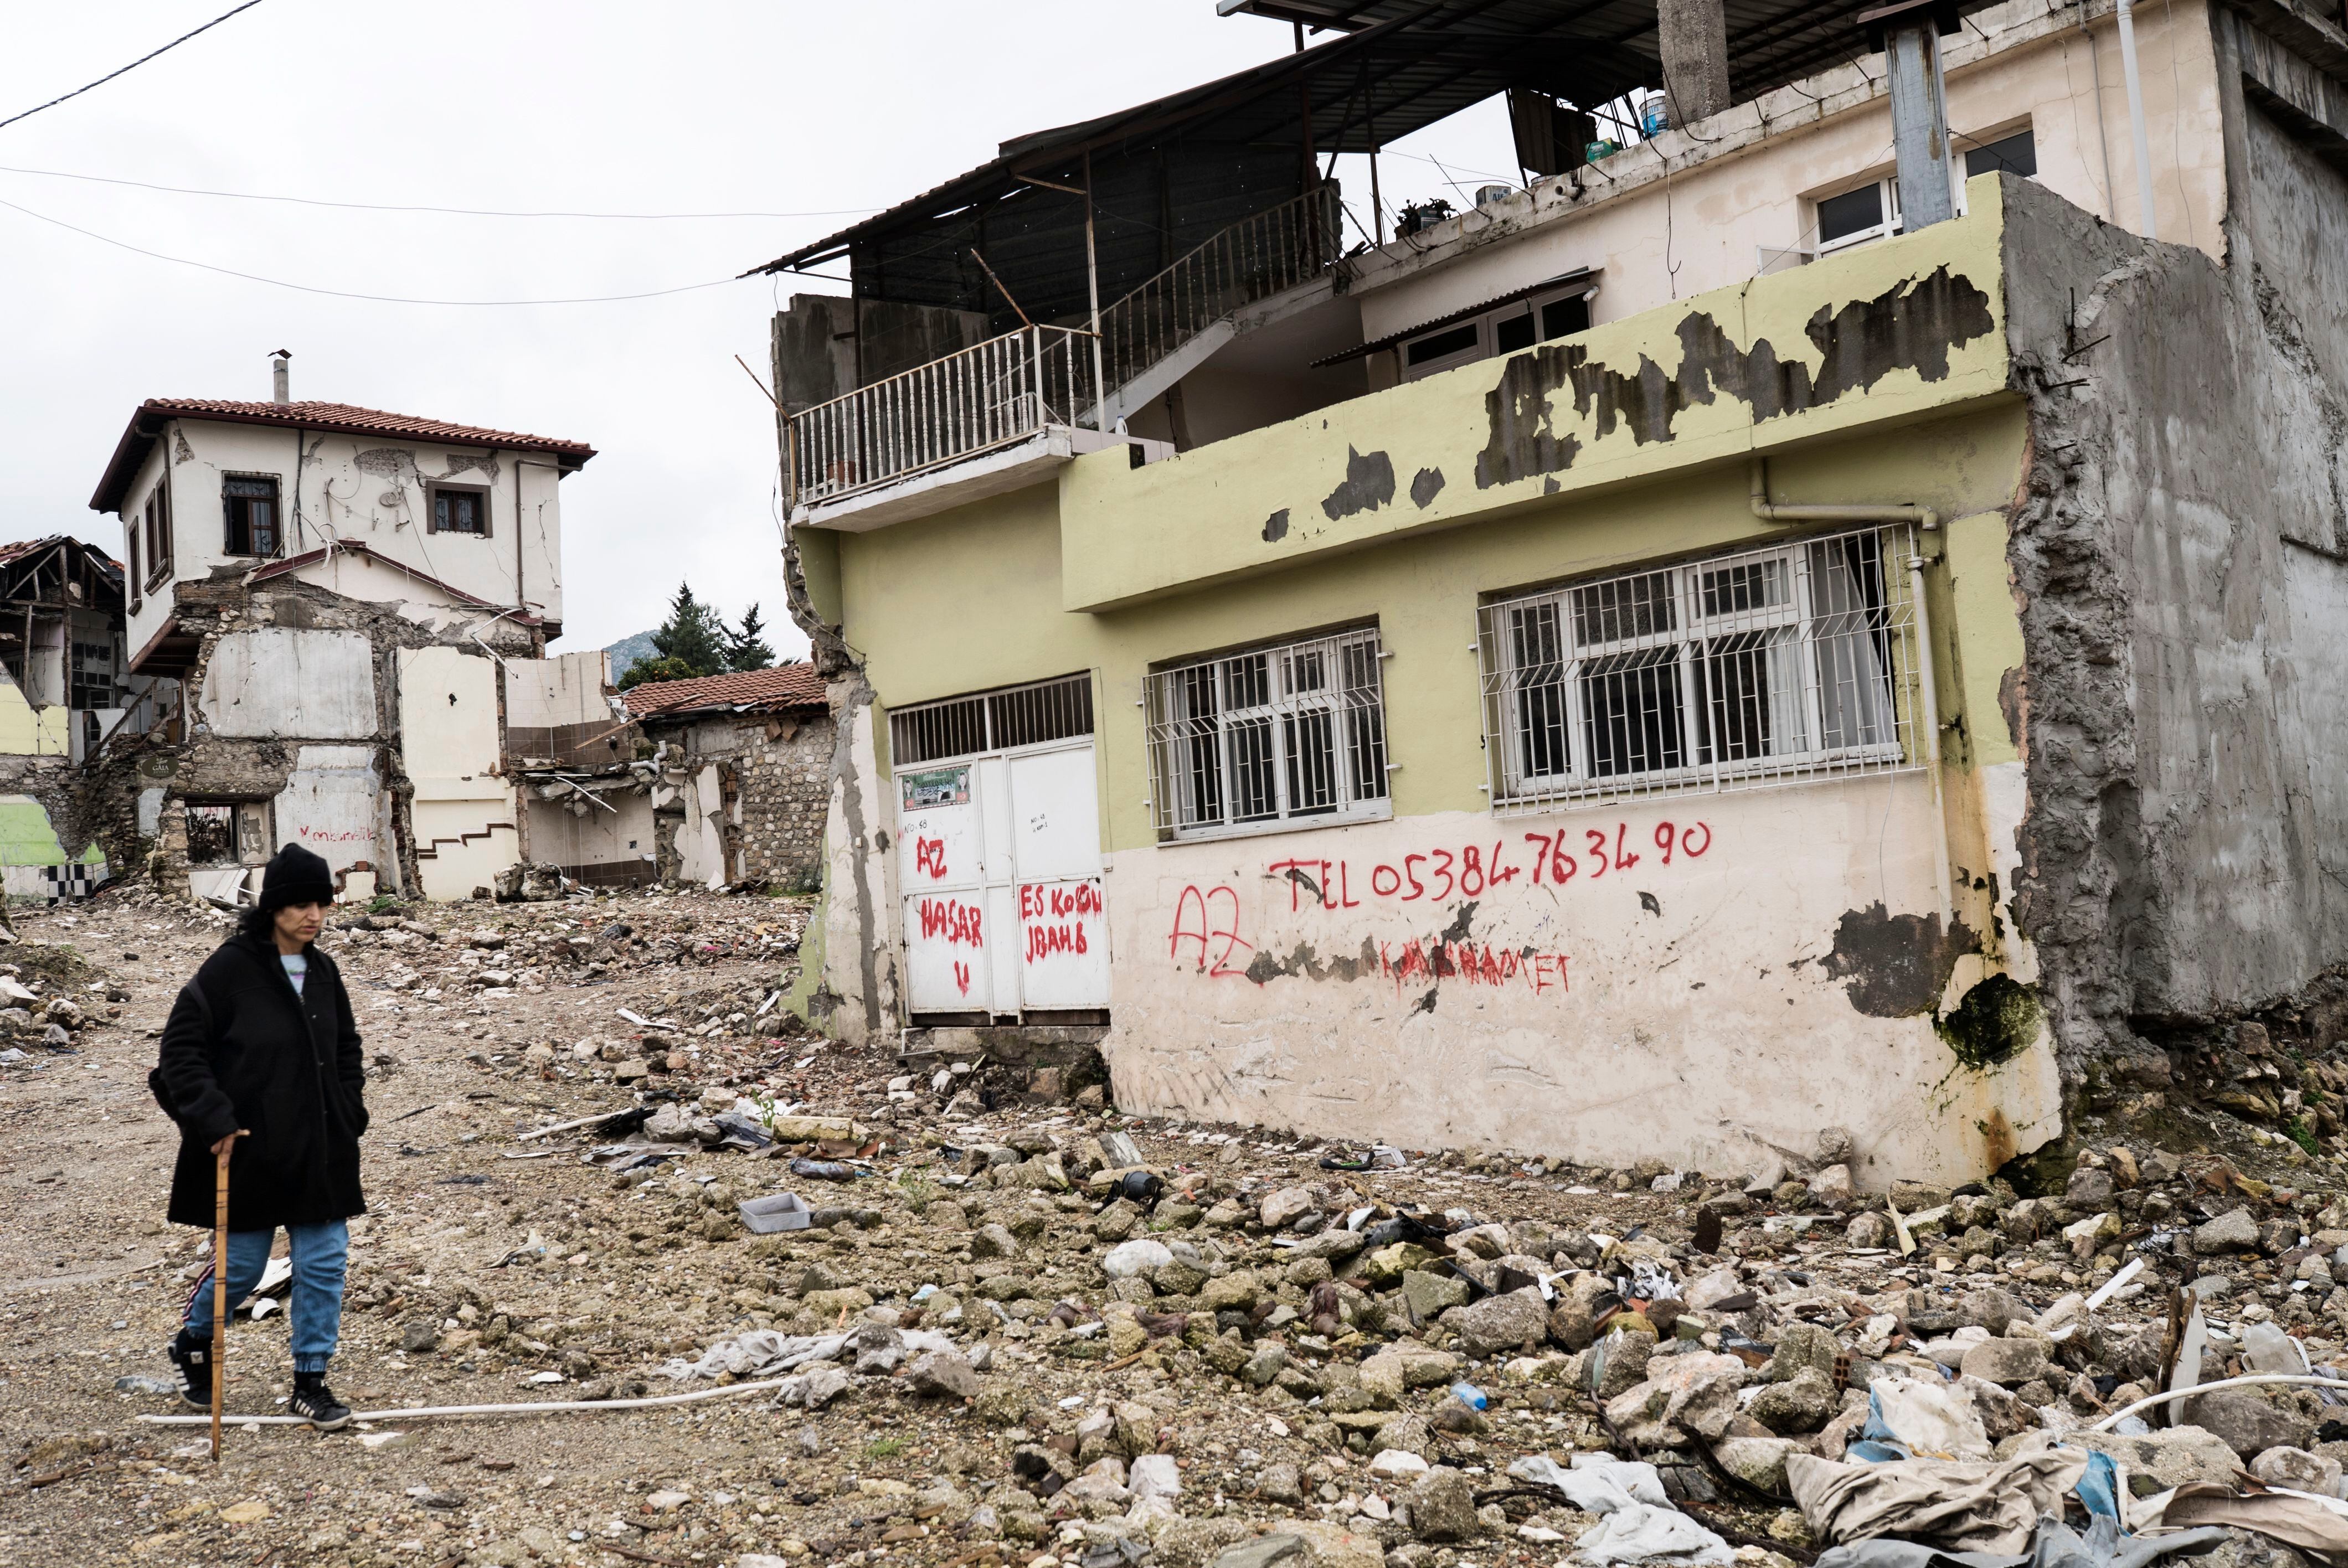 Antioquía (provincia de Hatay) Un año después del terremoto que dejó más de 53.000 muertes y 3 millones de personas sin hogar en el sur y sureste de Turquía, aún no se han completado los trabajados de derribo de edificios dañados y desescombro.